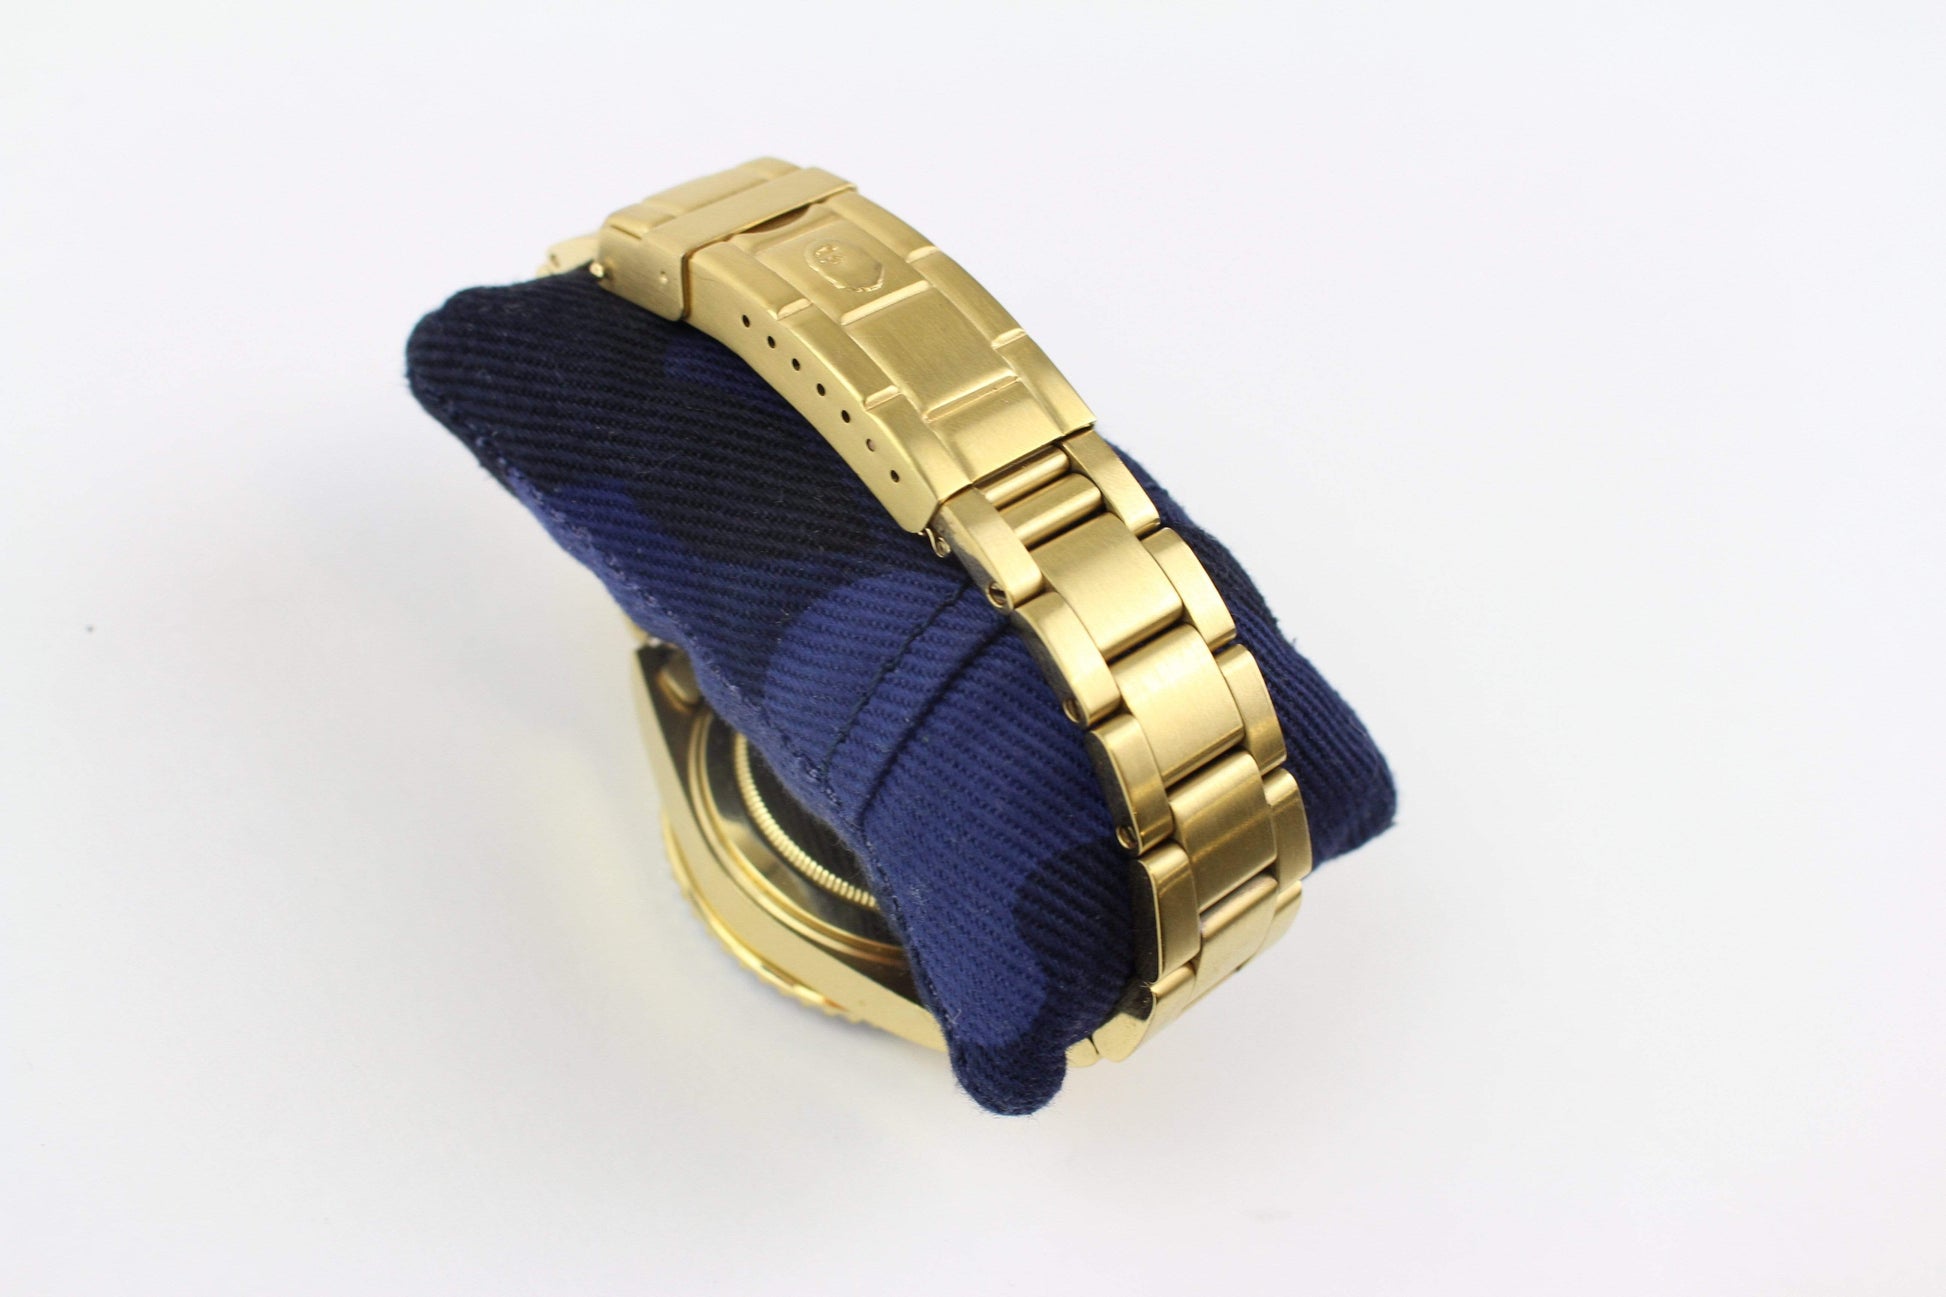 Bapex Gold blue - SaruGeneral